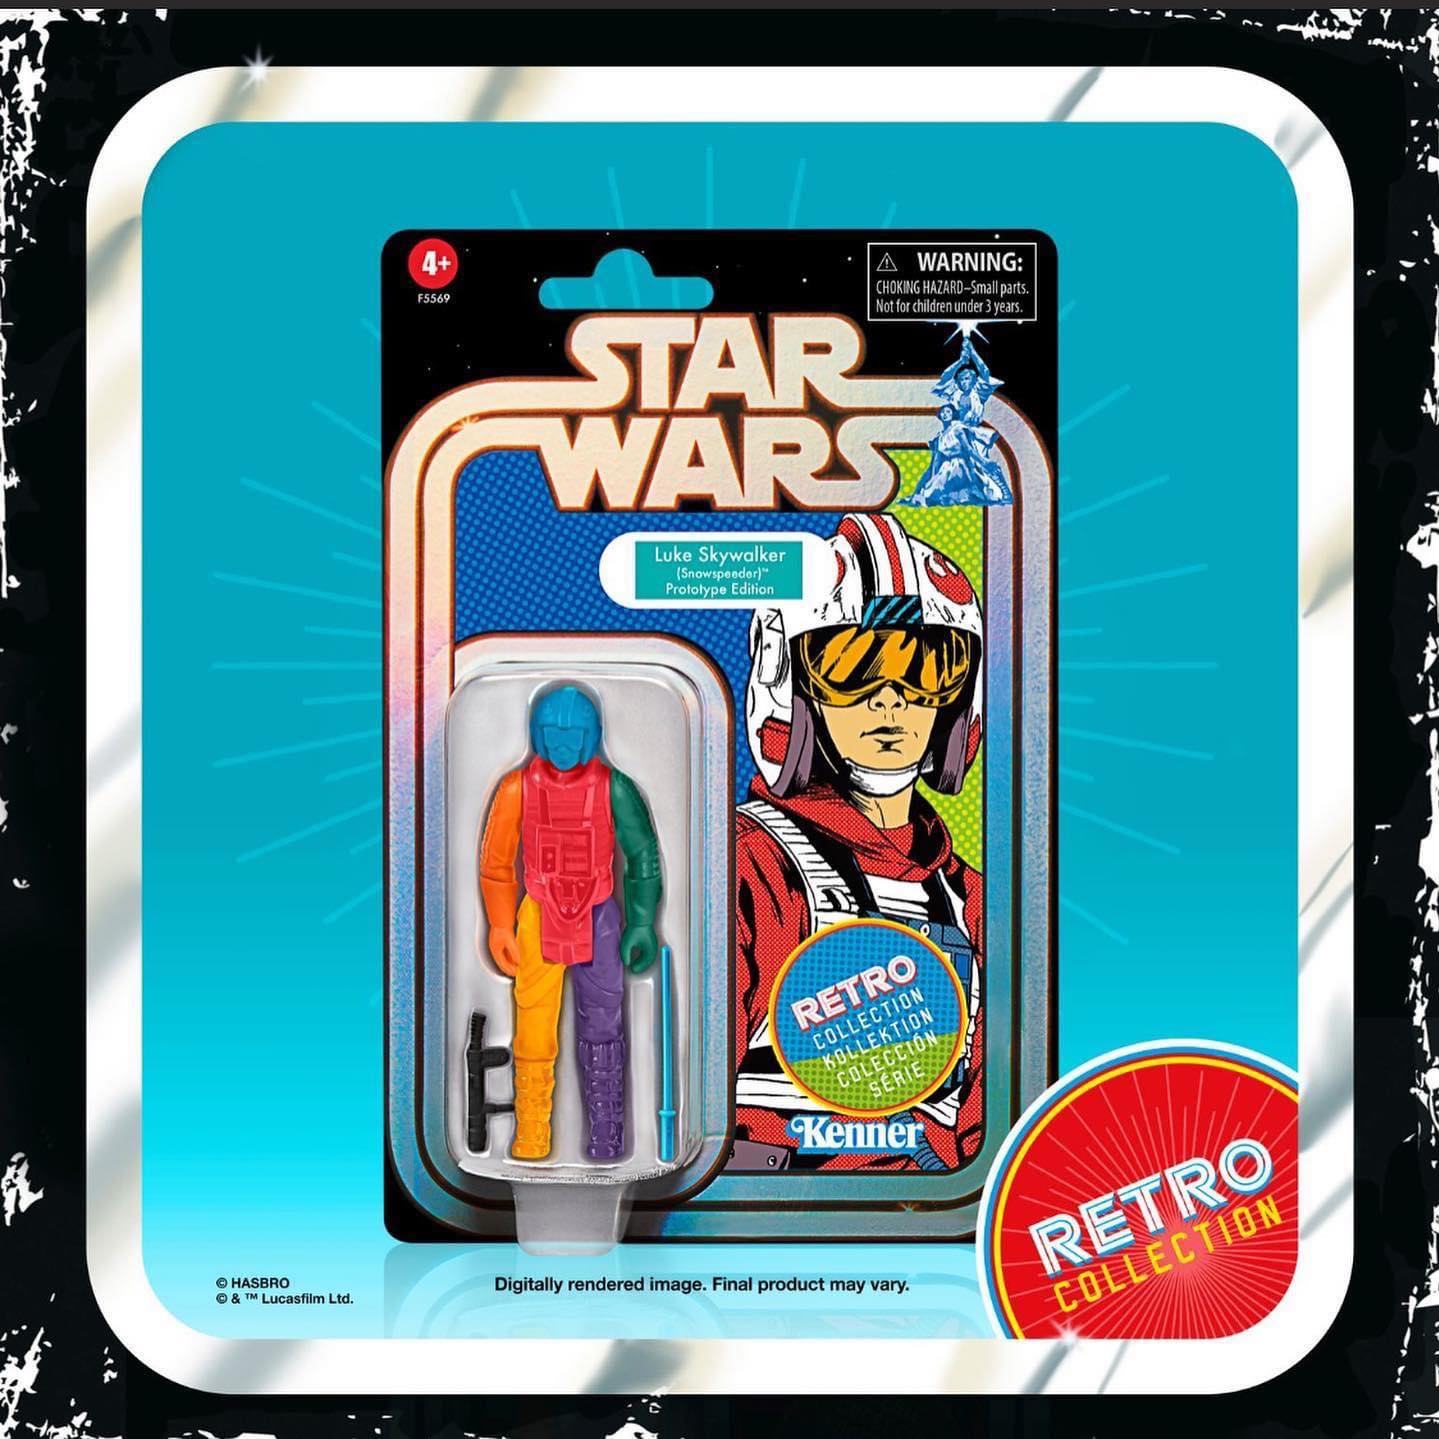 Star Wars Retro Collection Luke Skywalker Snowspeeder Prototype Edition画像